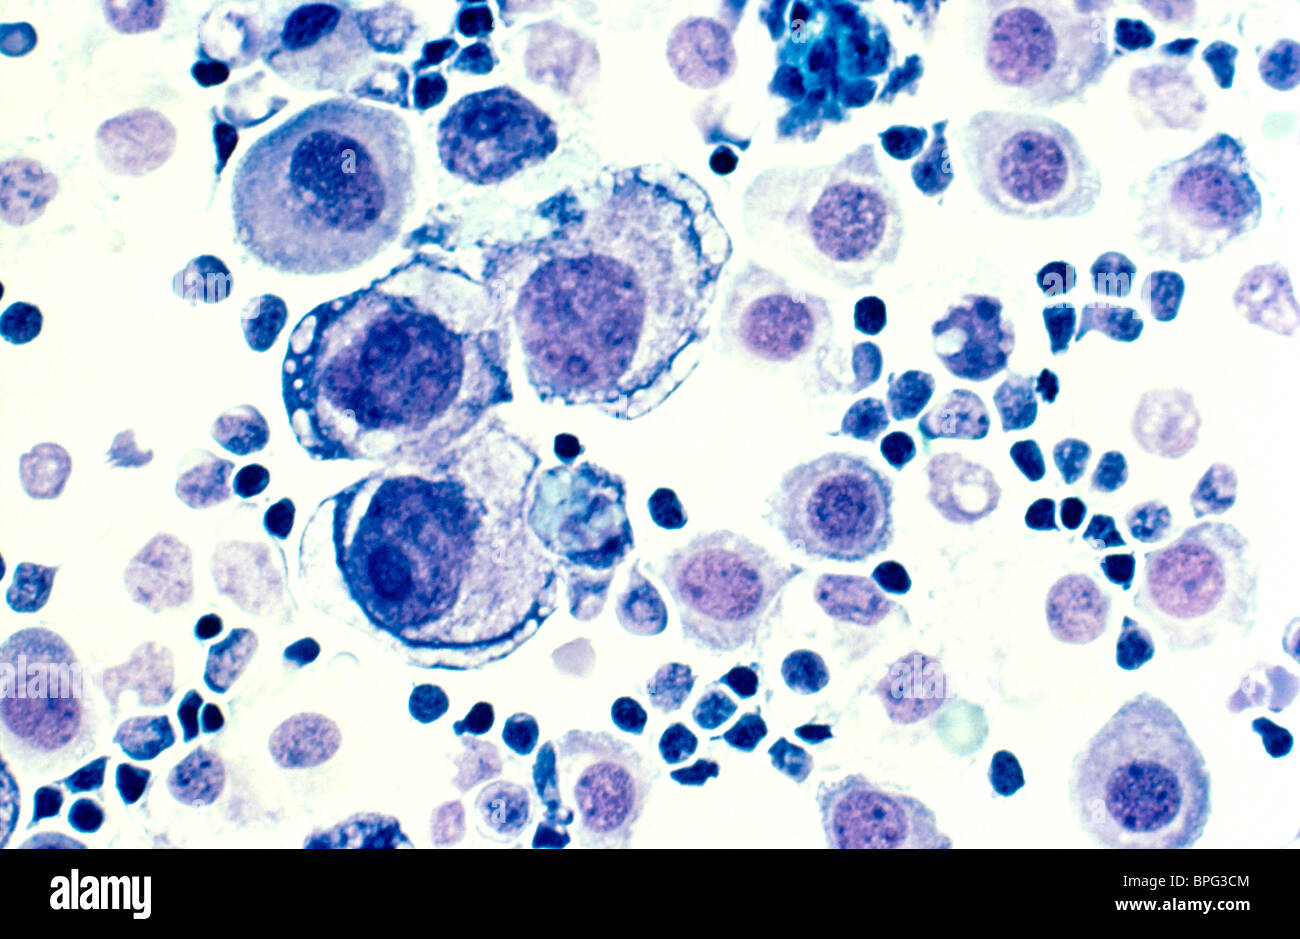 Human metastasi del cancro al seno nel fluido pleurico. Colorate con H&E e ingrandita a 400x. Foto Stock